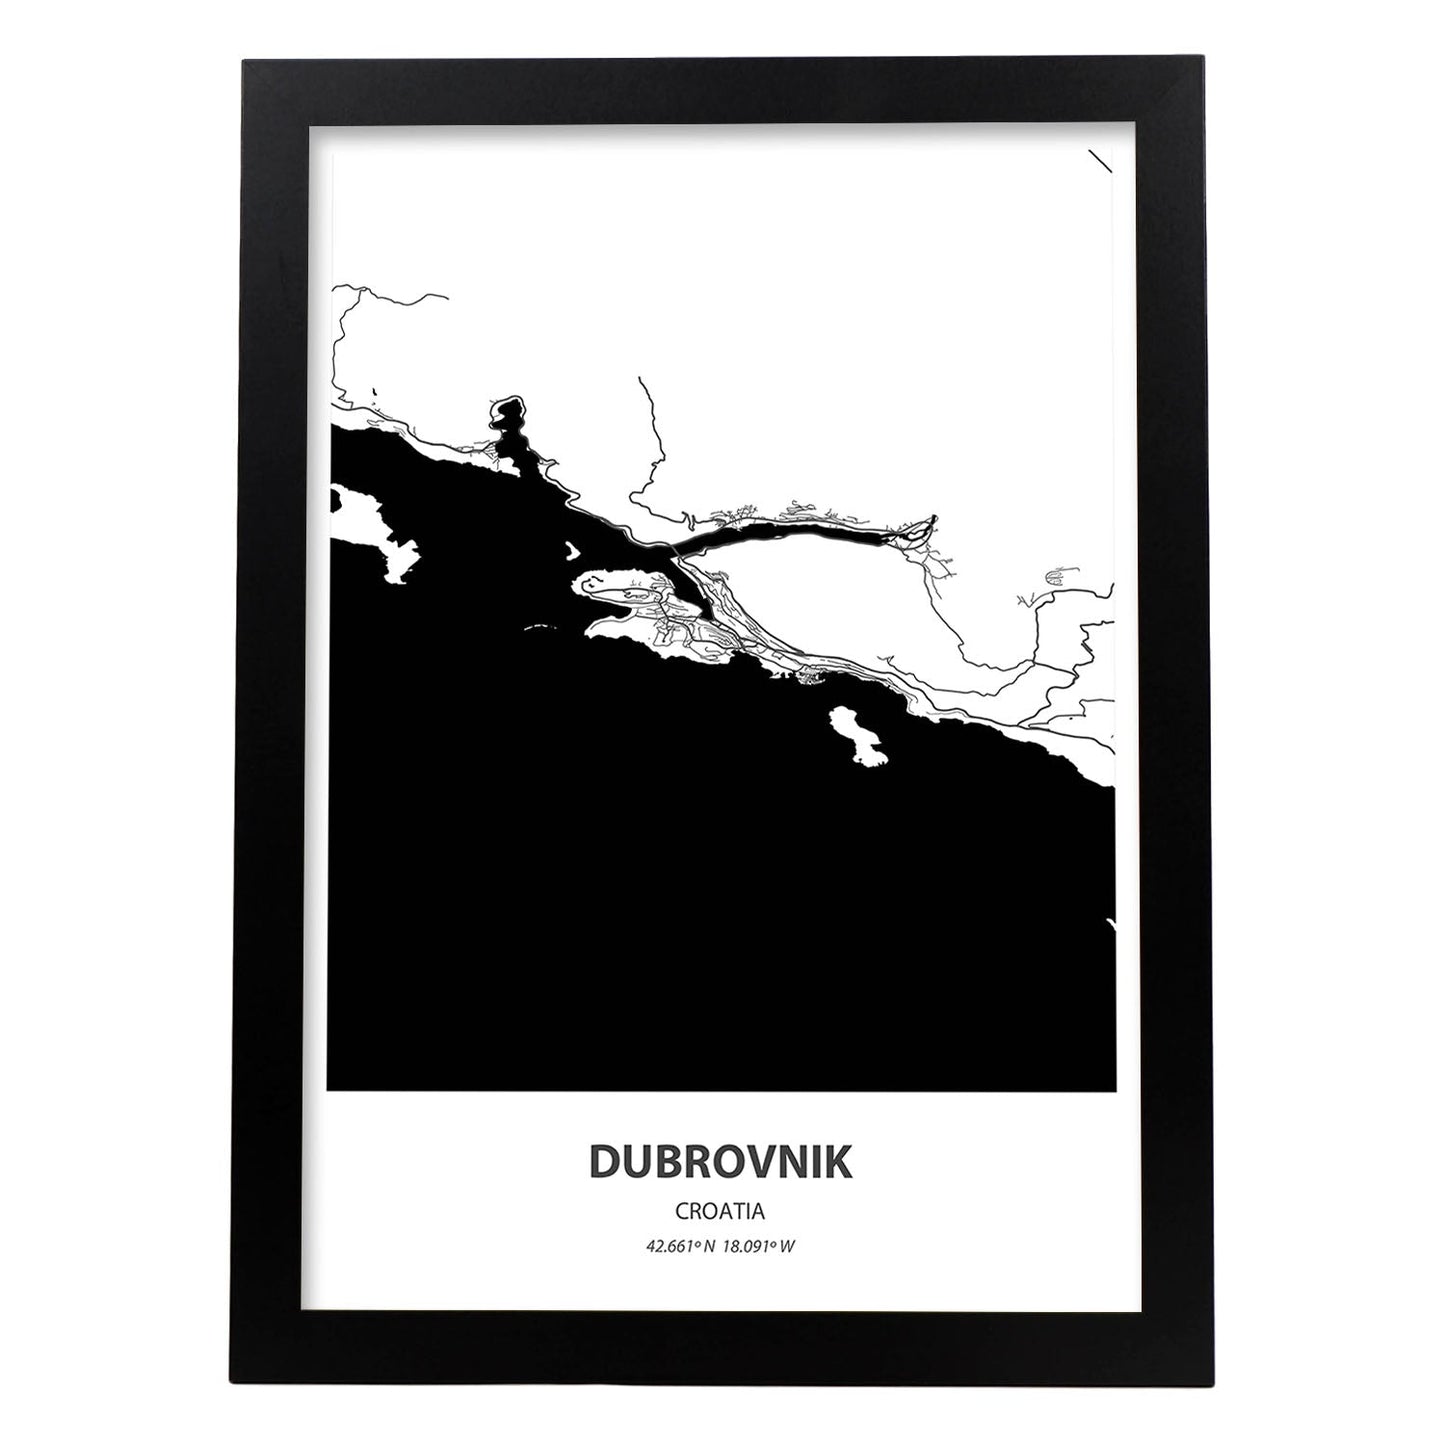 Poster con mapa de Dubrokniv - Croacia. Láminas de ciudades de Europa con mares y ríos en color negro.-Artwork-Nacnic-A3-Marco Negro-Nacnic Estudio SL